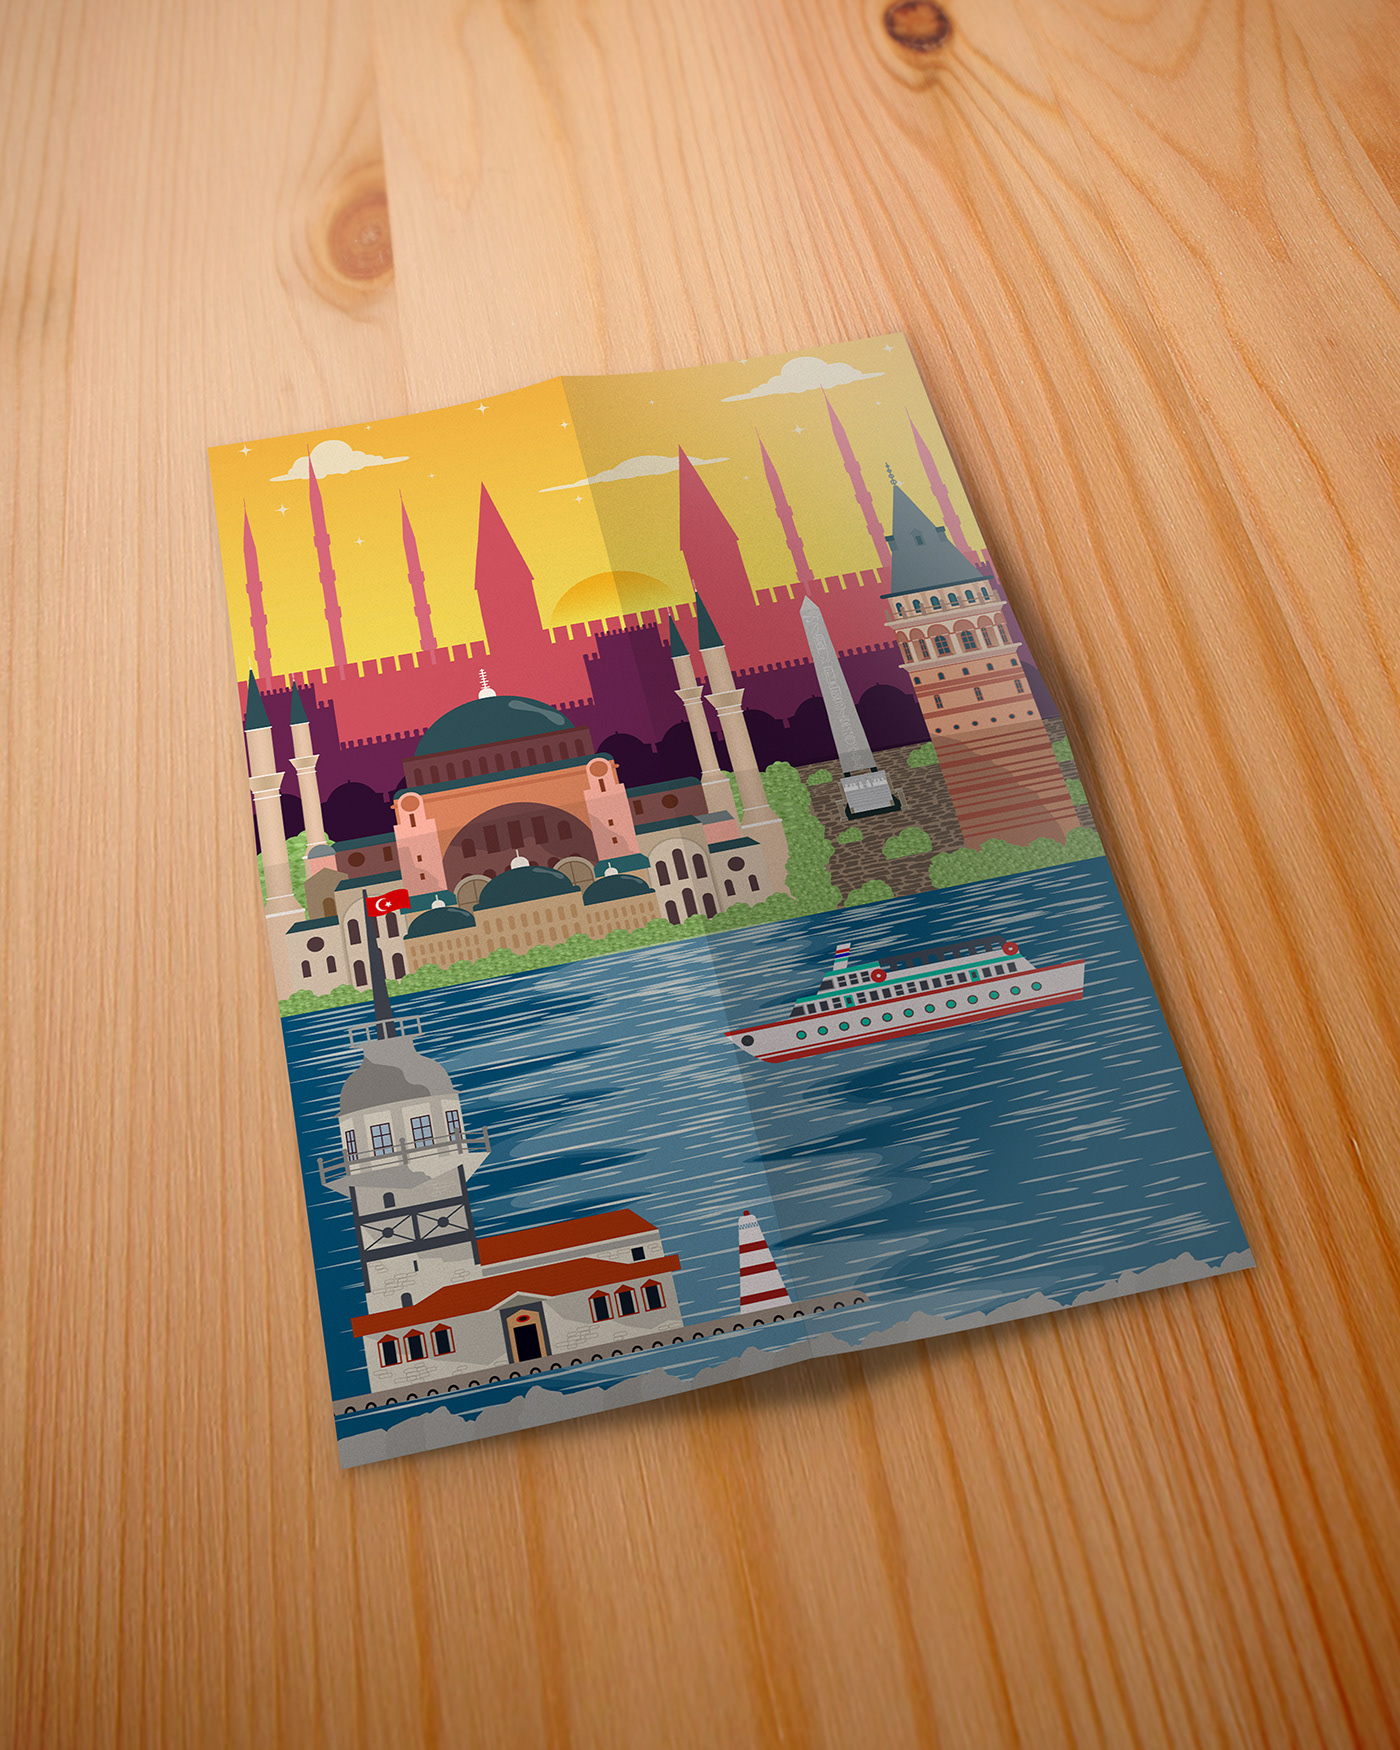 istanbul Illustrator Constantinople Hagia Sophia Turkey MaidensTower galata tower Behance